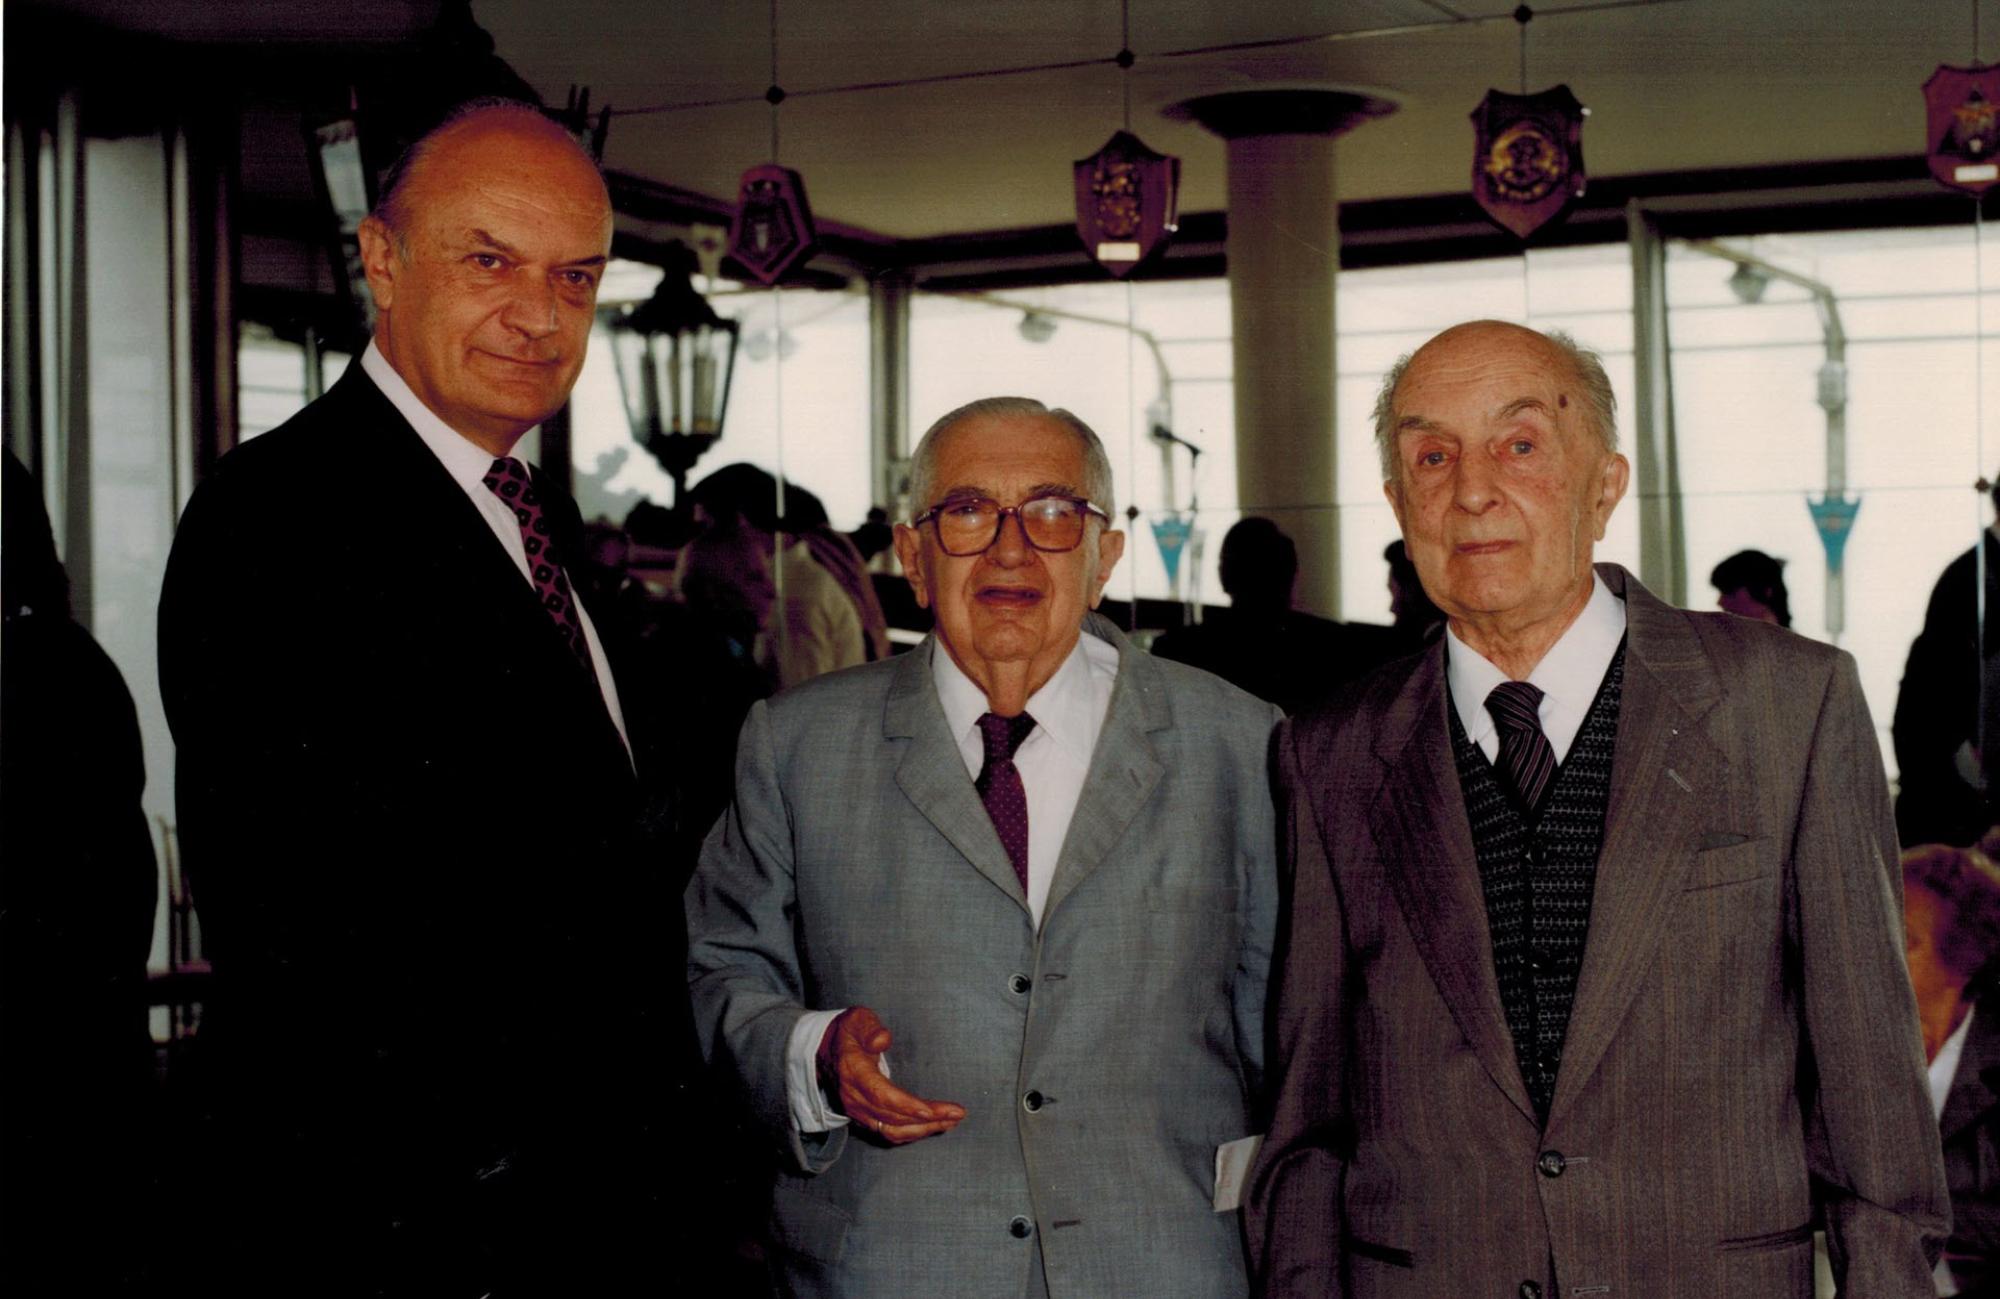 Giorgio Ferrari, Presidente dell'edizione del 1988, con De Bernardis e Ruminelli